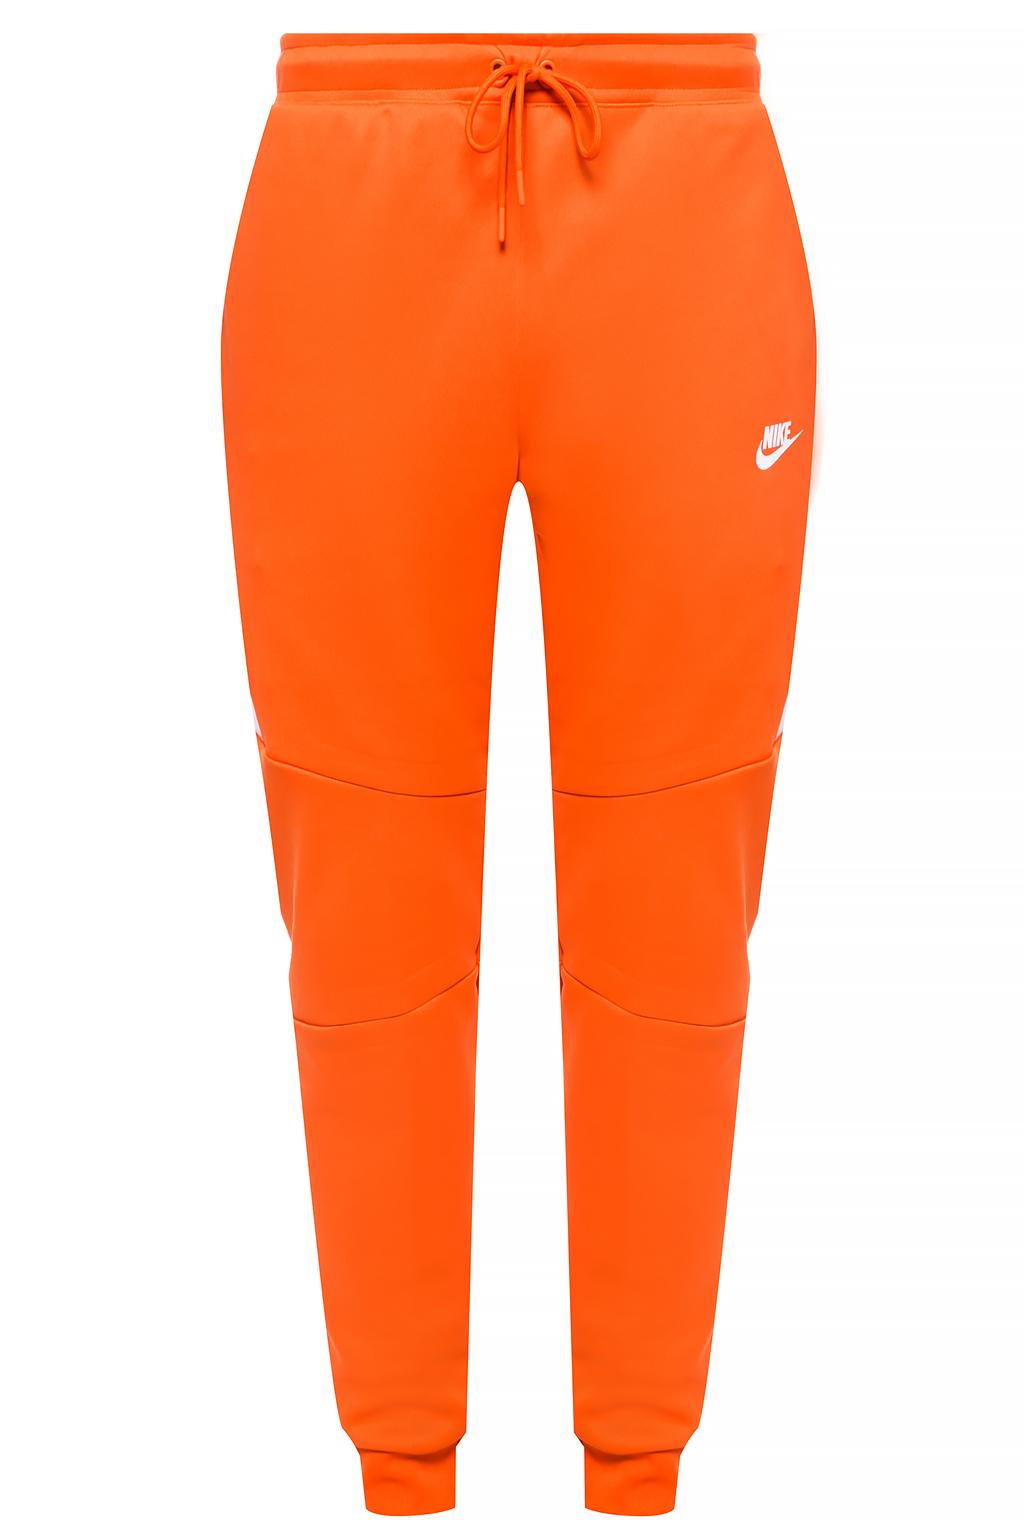 orange nike pants